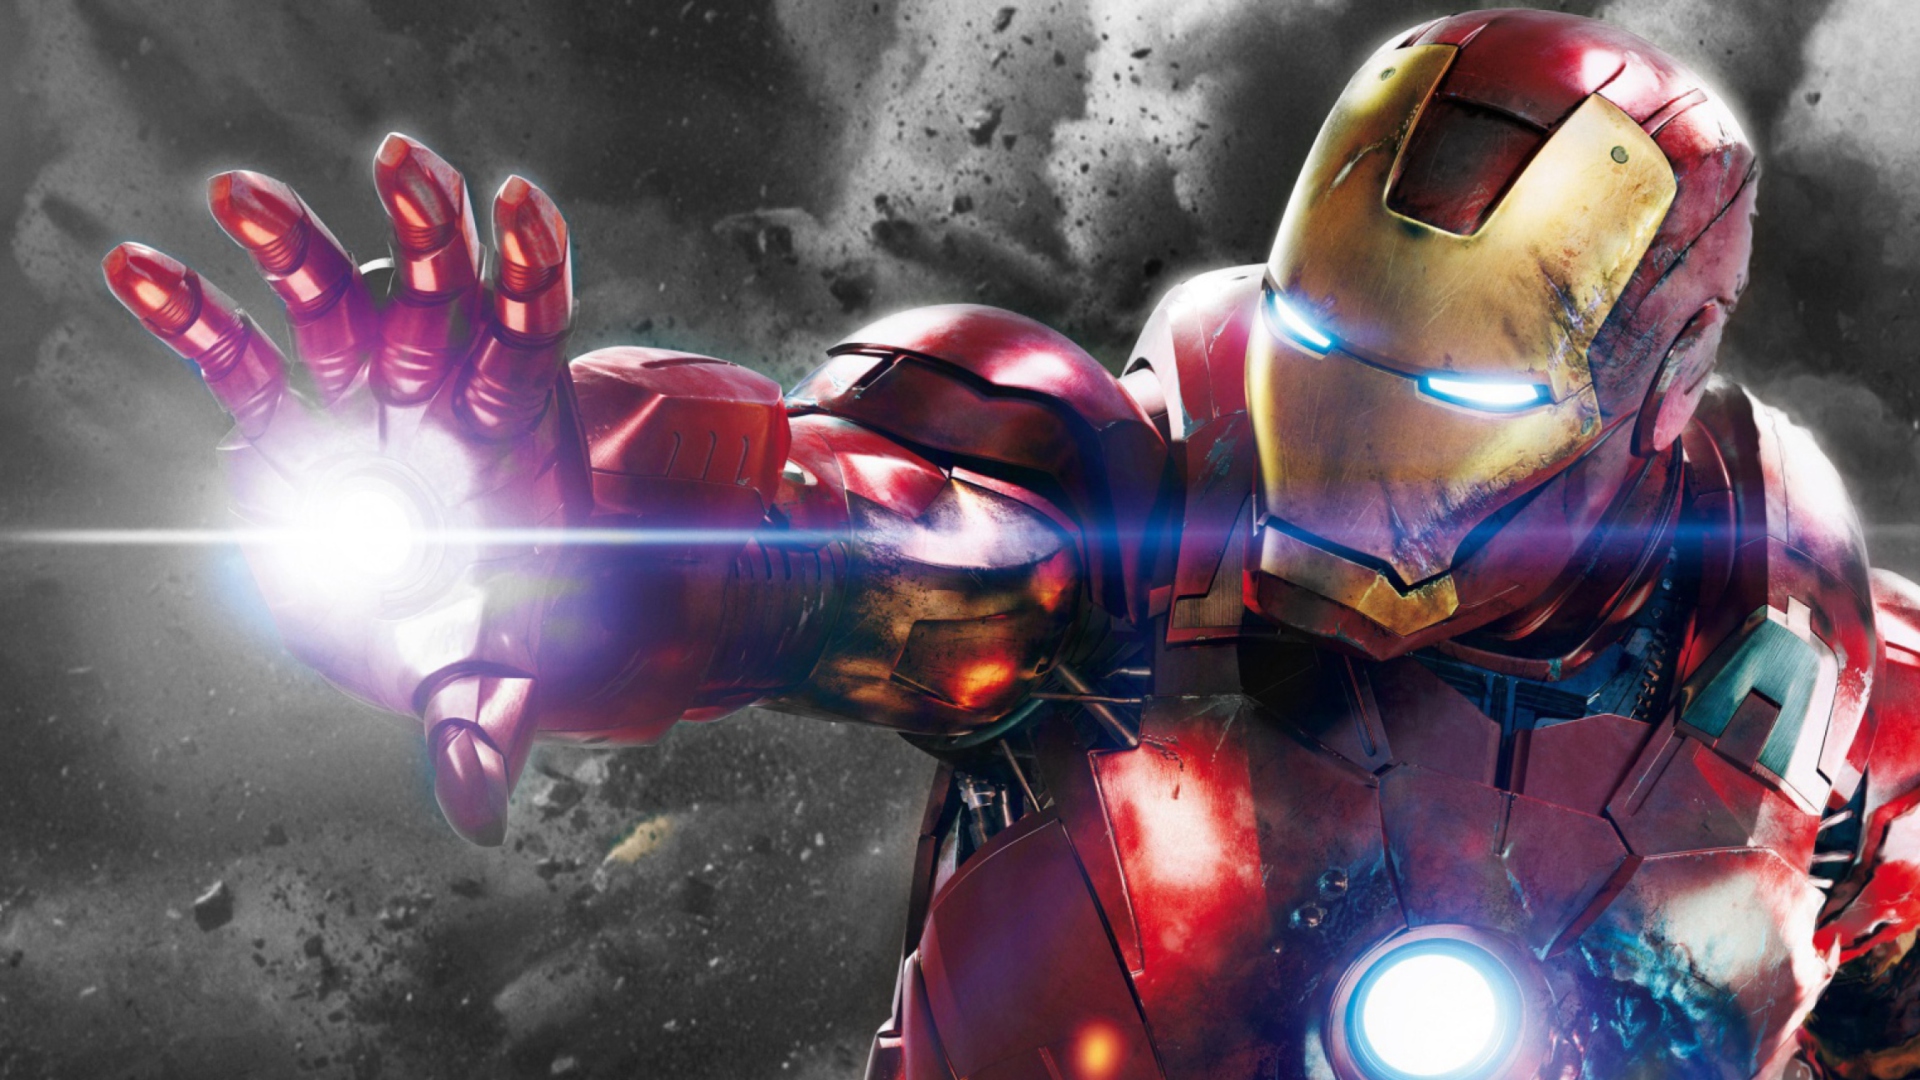 Iron Man - The Avengers 2012 wallpaper 1920x1080